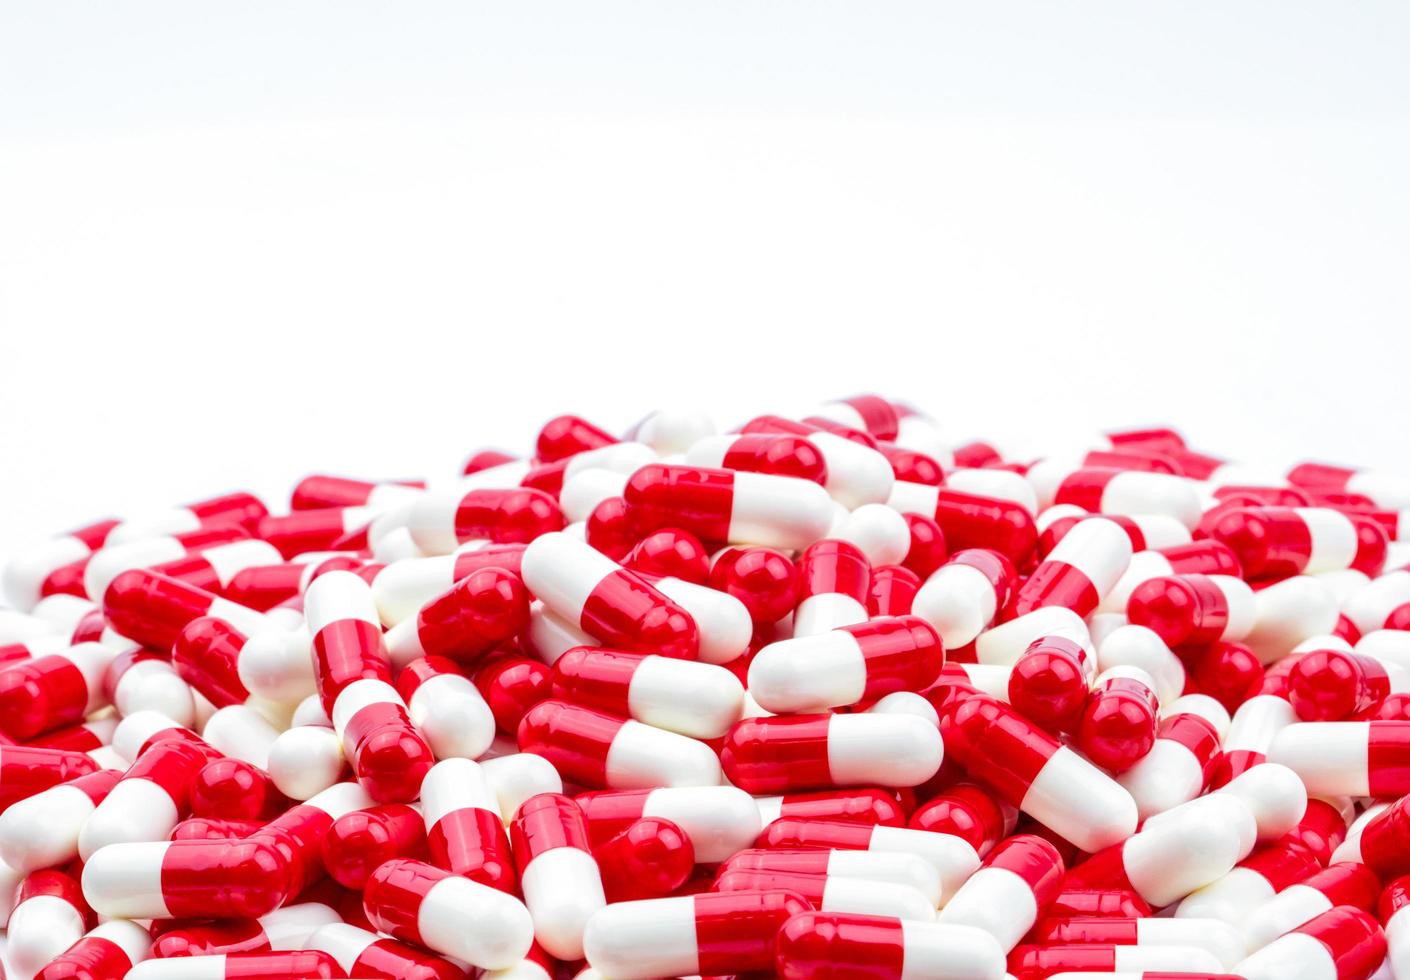 selectieve focus van antibiotica capsules pillen op onscherpe achtergrond met kopie ruimte. geneesmiddelresistentie concept. antibiotica drugsgebruik met een redelijk en wereldwijd gezondheidsconcept. foto